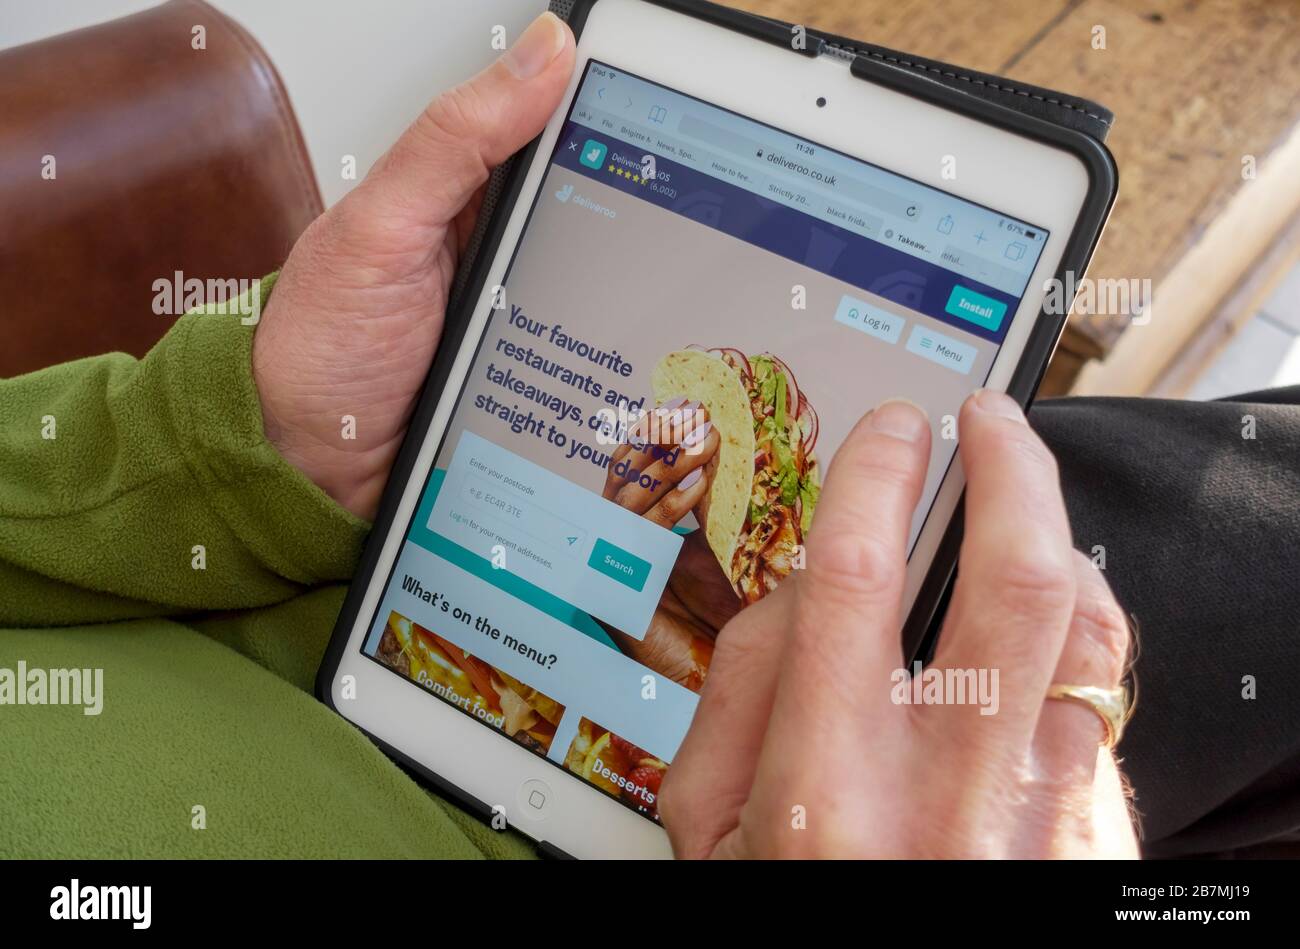 Primo piano di persona uomo che ordina un ordine di fast food online sul sito web Deliveroo su iPad tablet Inghilterra Regno Unito Foto Stock